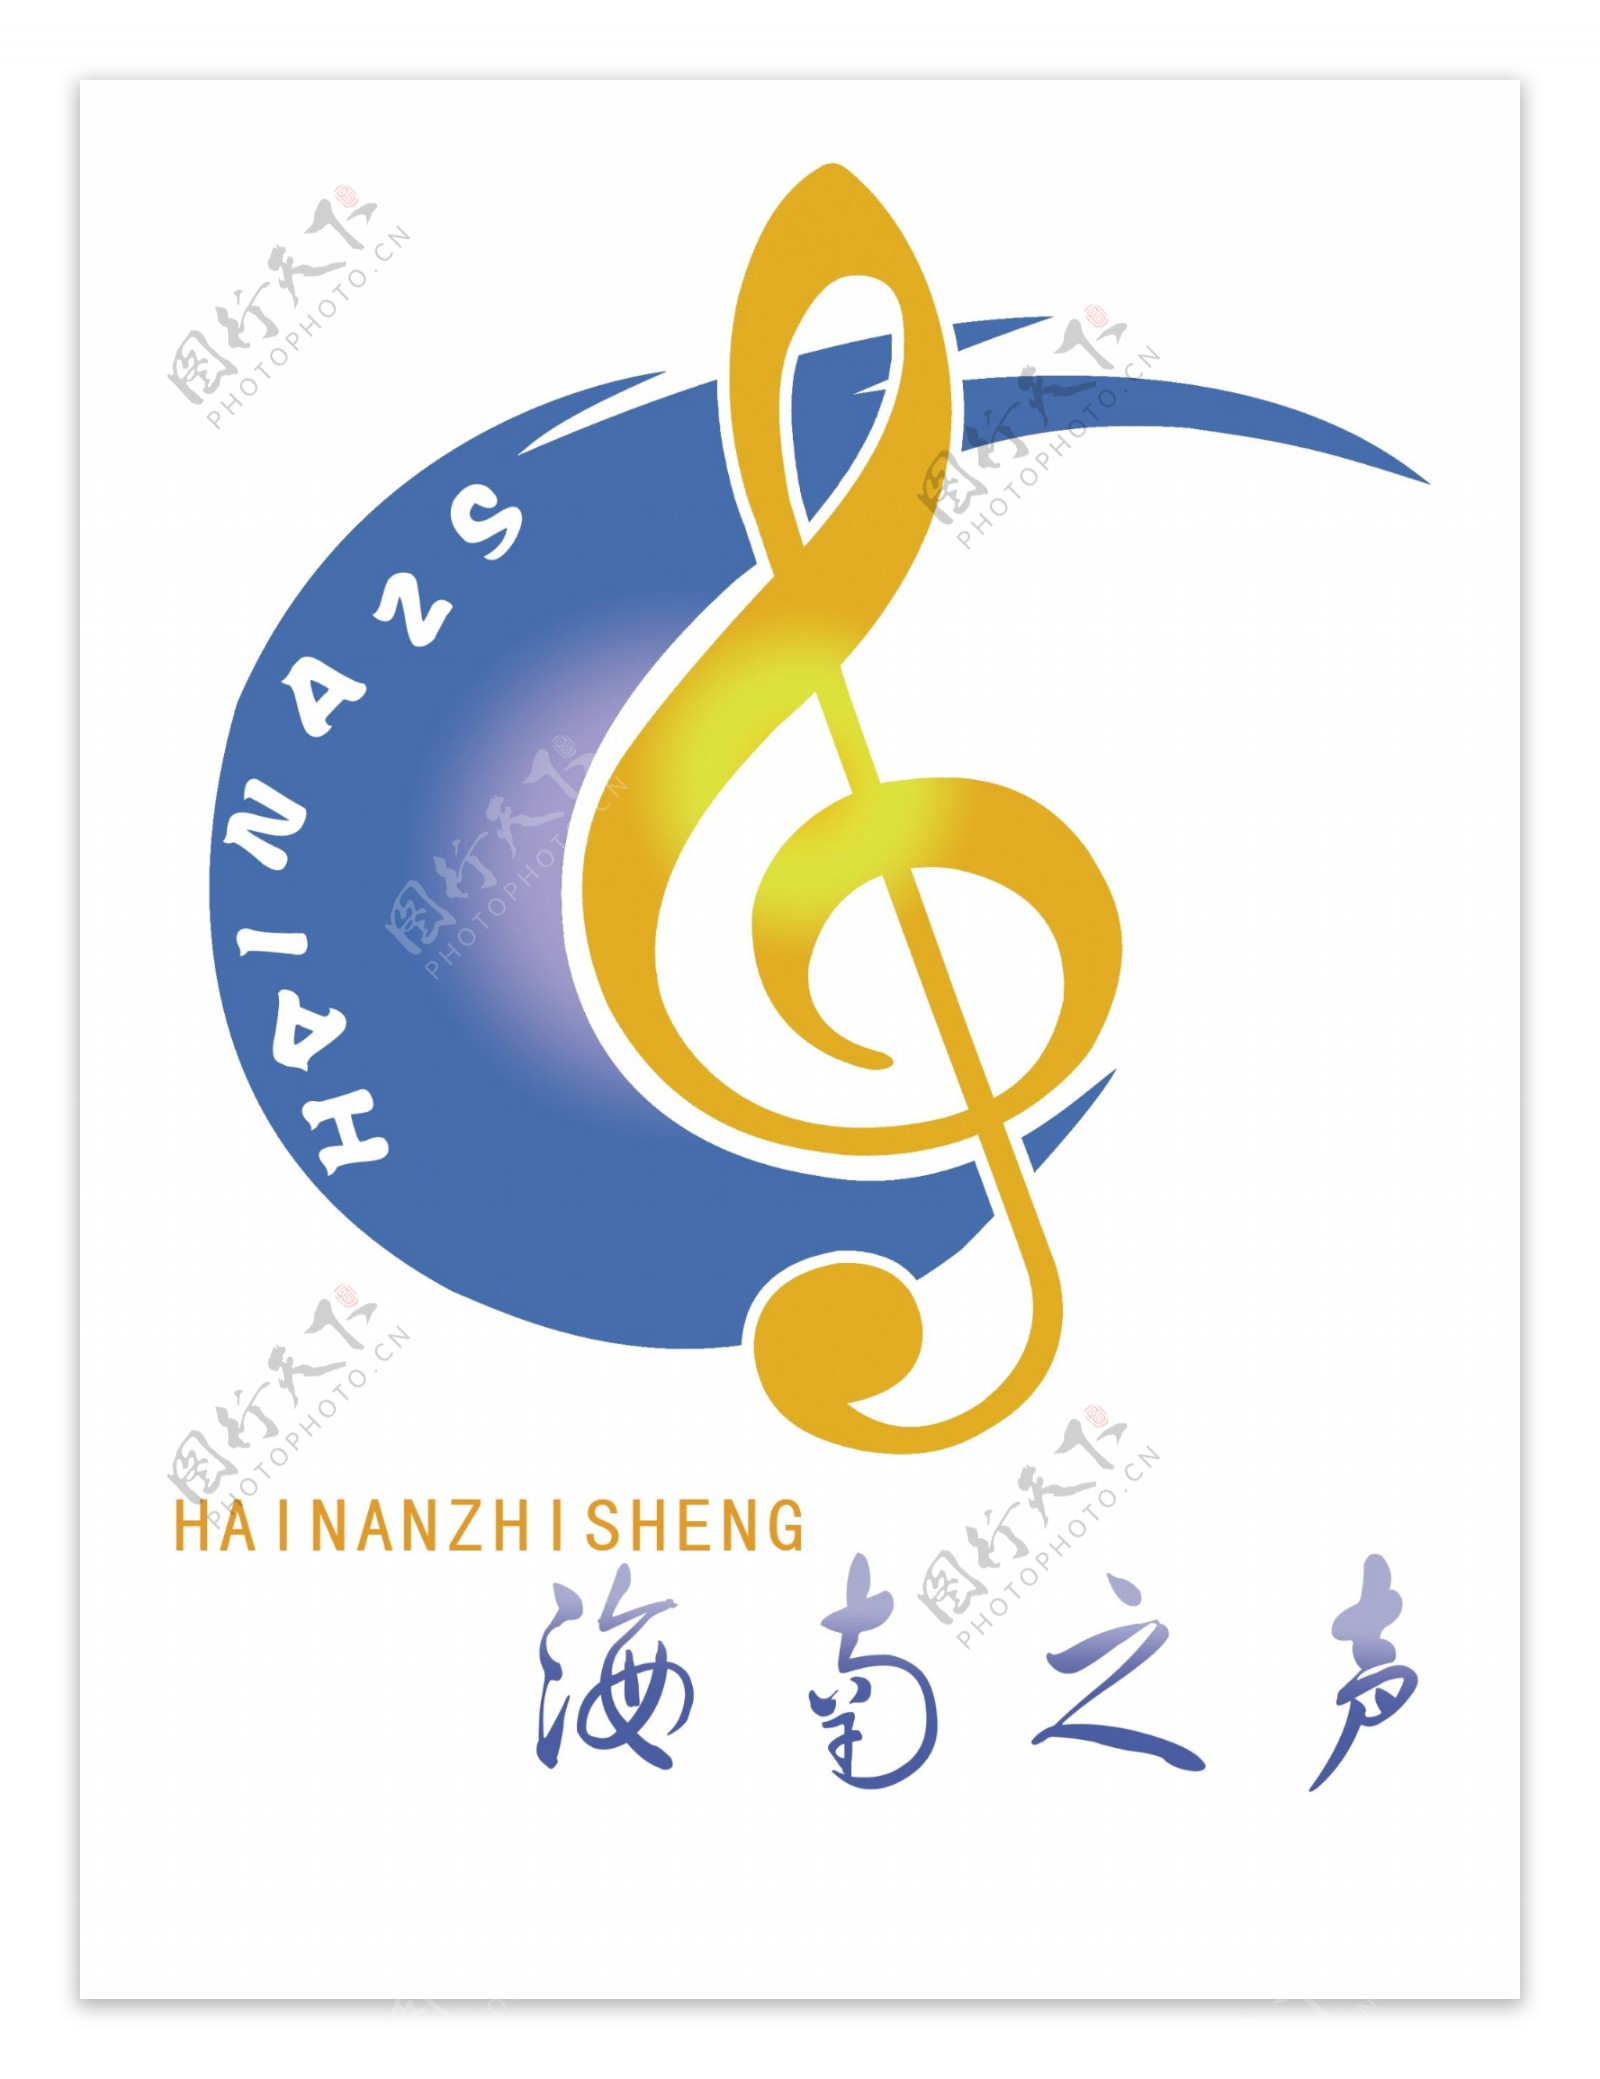 海南之声logo图片